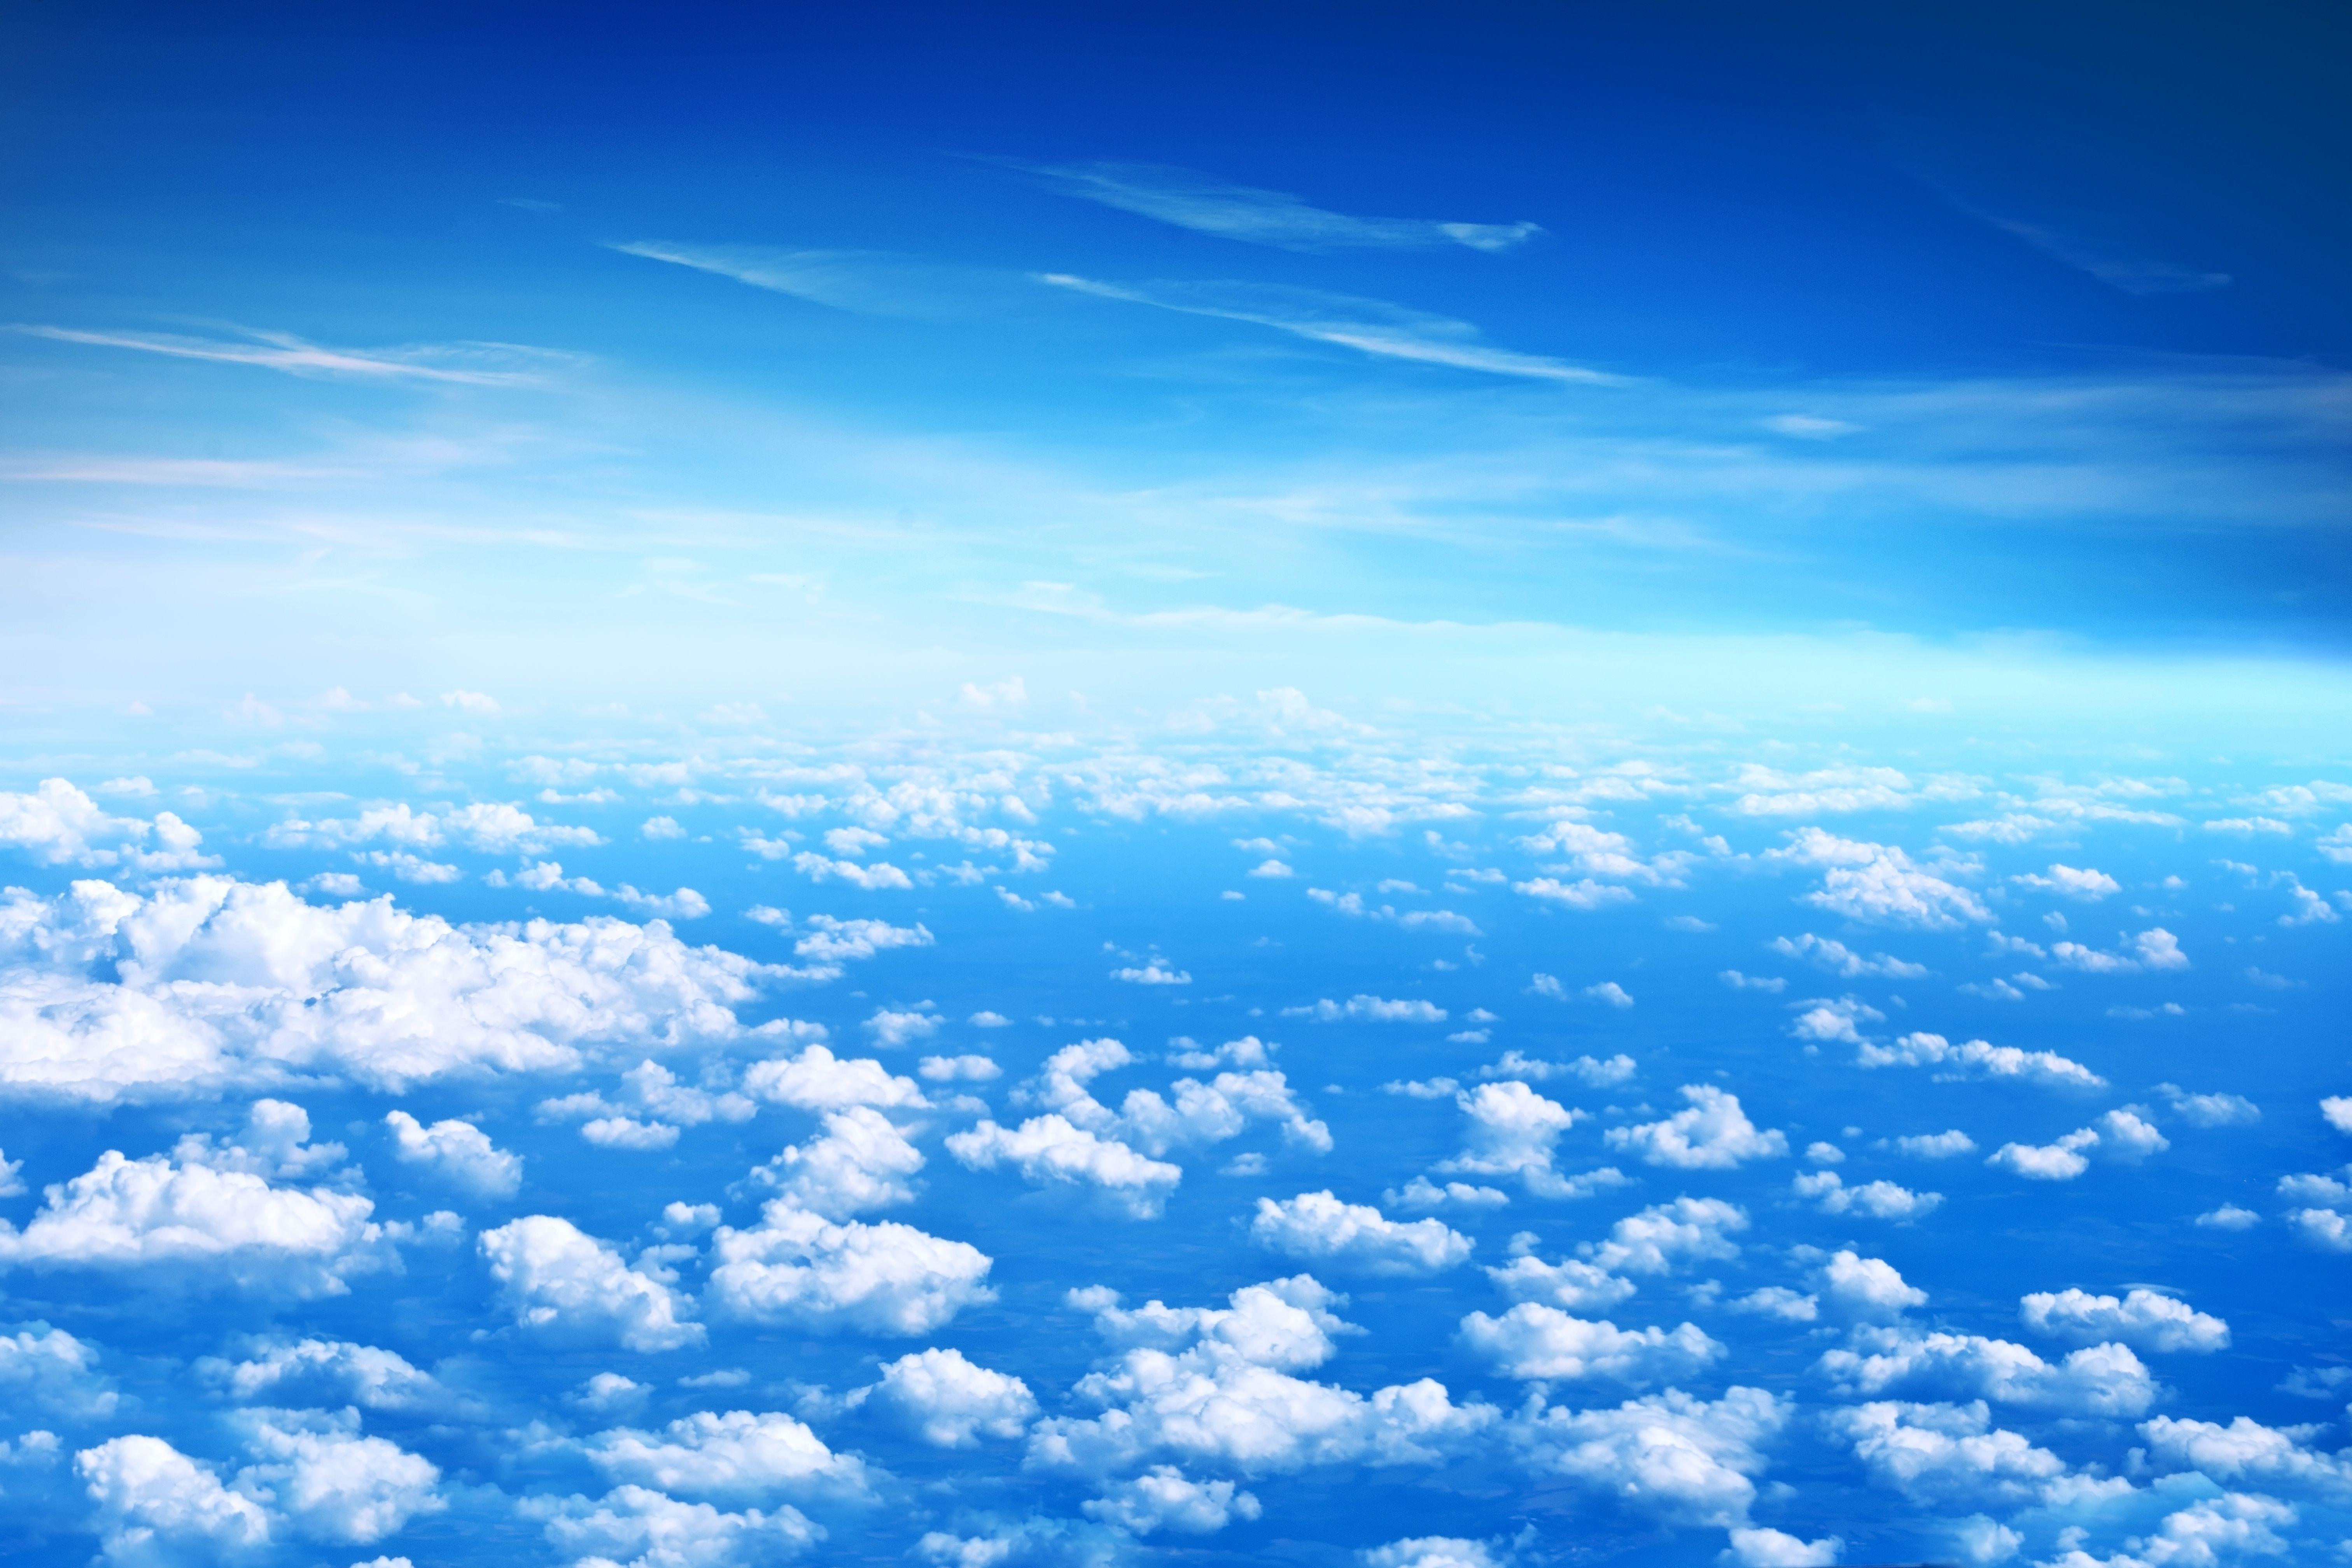 долина Небо красивое голубое небо и облака с сине зеленой землей,  облакаголубое небо, Hd фотография фото, облако фон картинки и Фото для  бесплатной загрузки